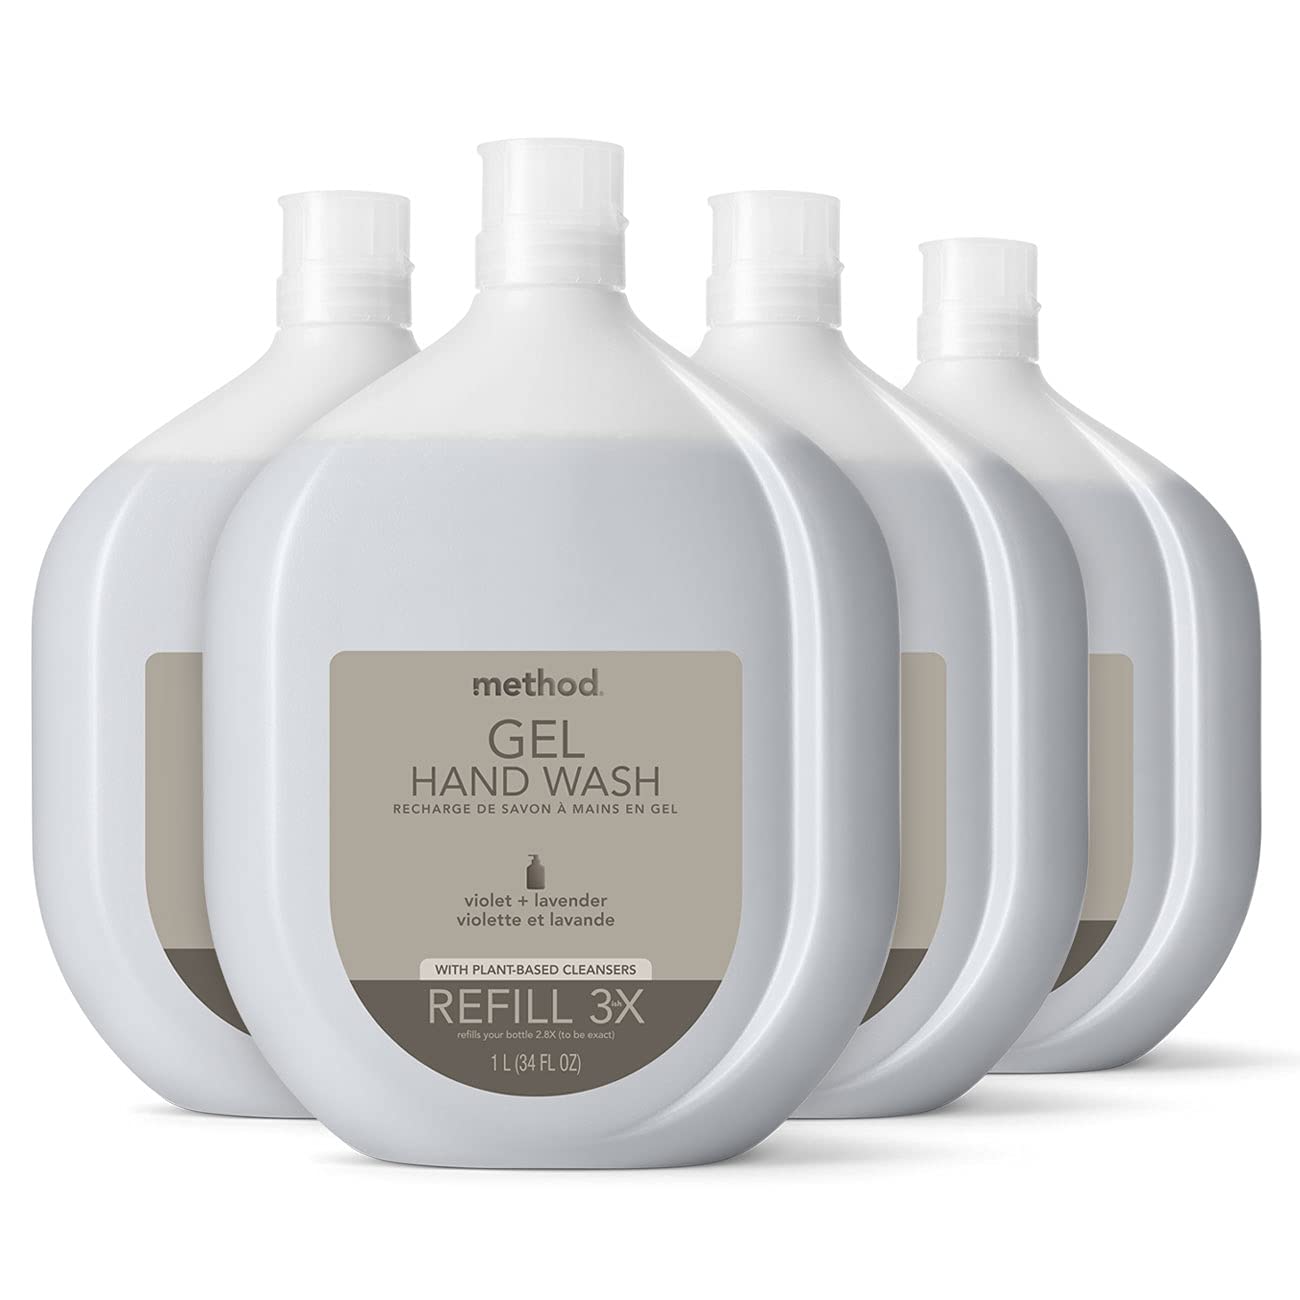 Method Premium Gel Hand Soap Refill, Violet + Lavender, Recyclable Bottle, Biodegradable Formula, 34 fl oz (Pack of 4)